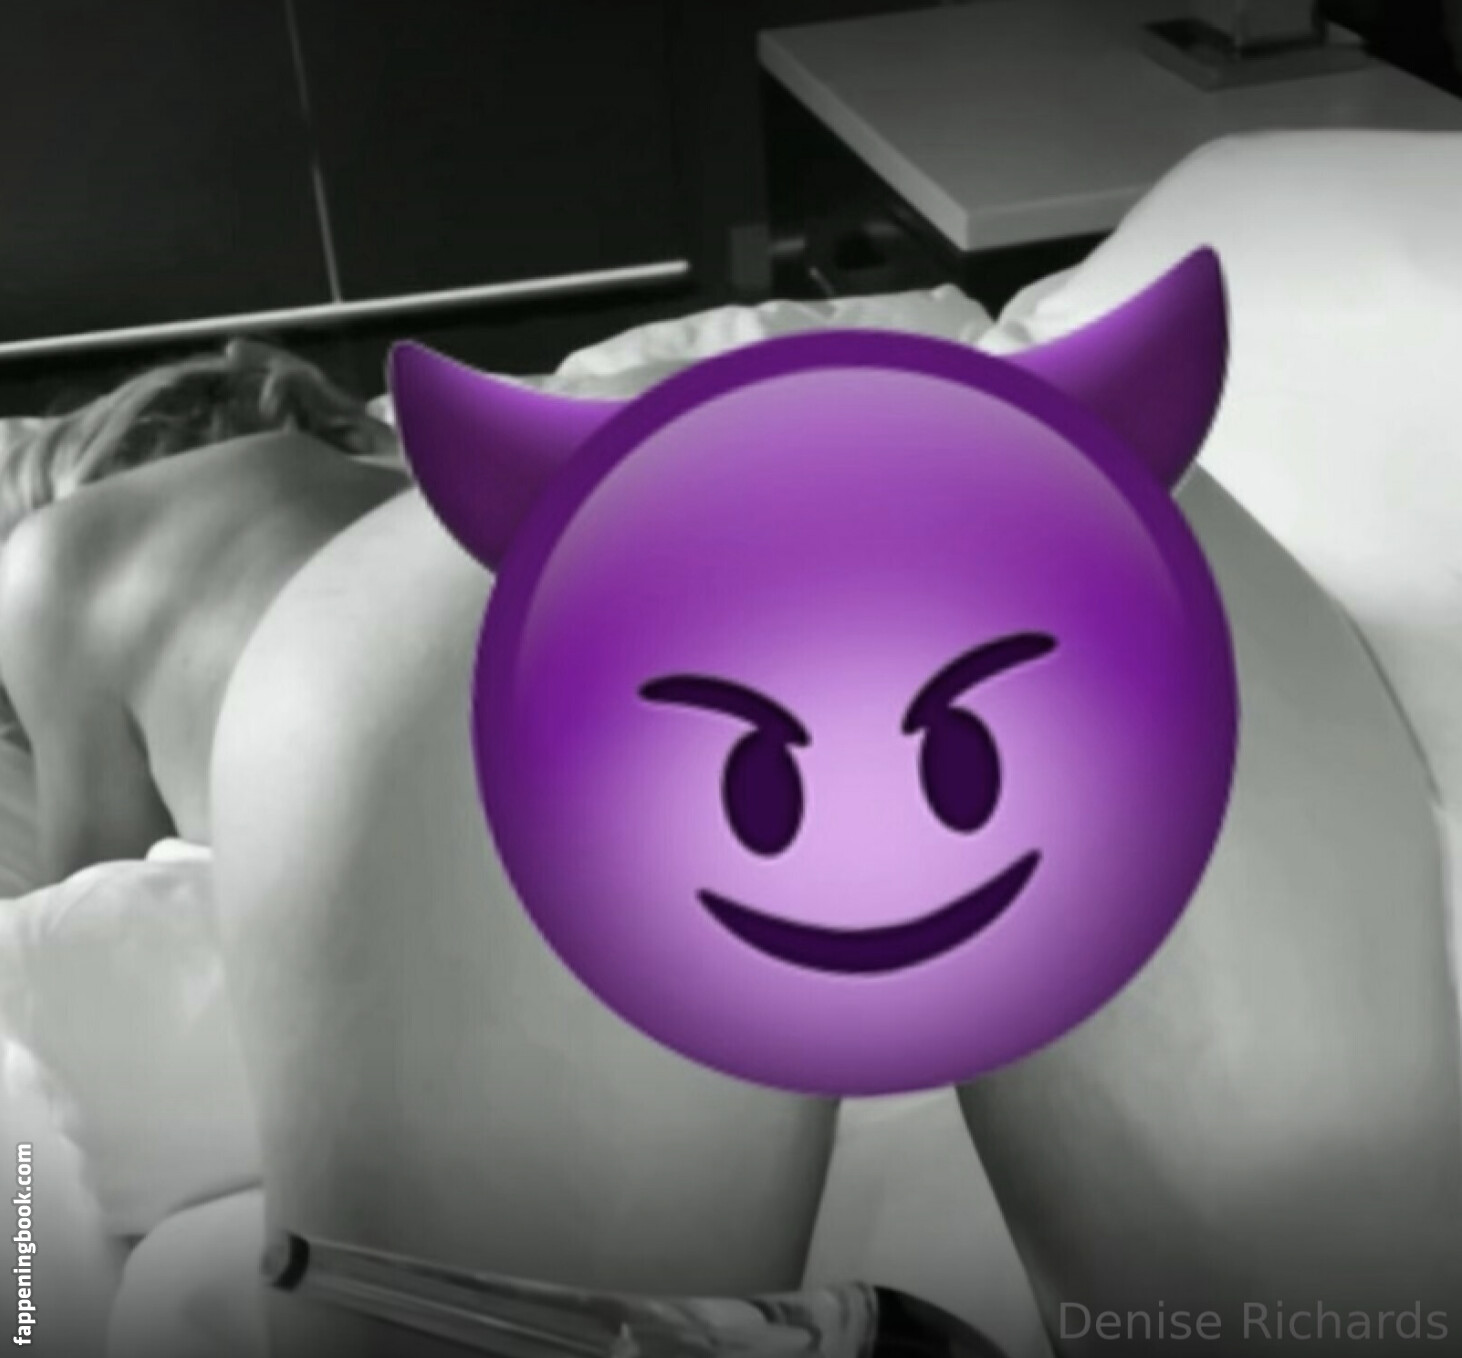 Denise Richards Nude